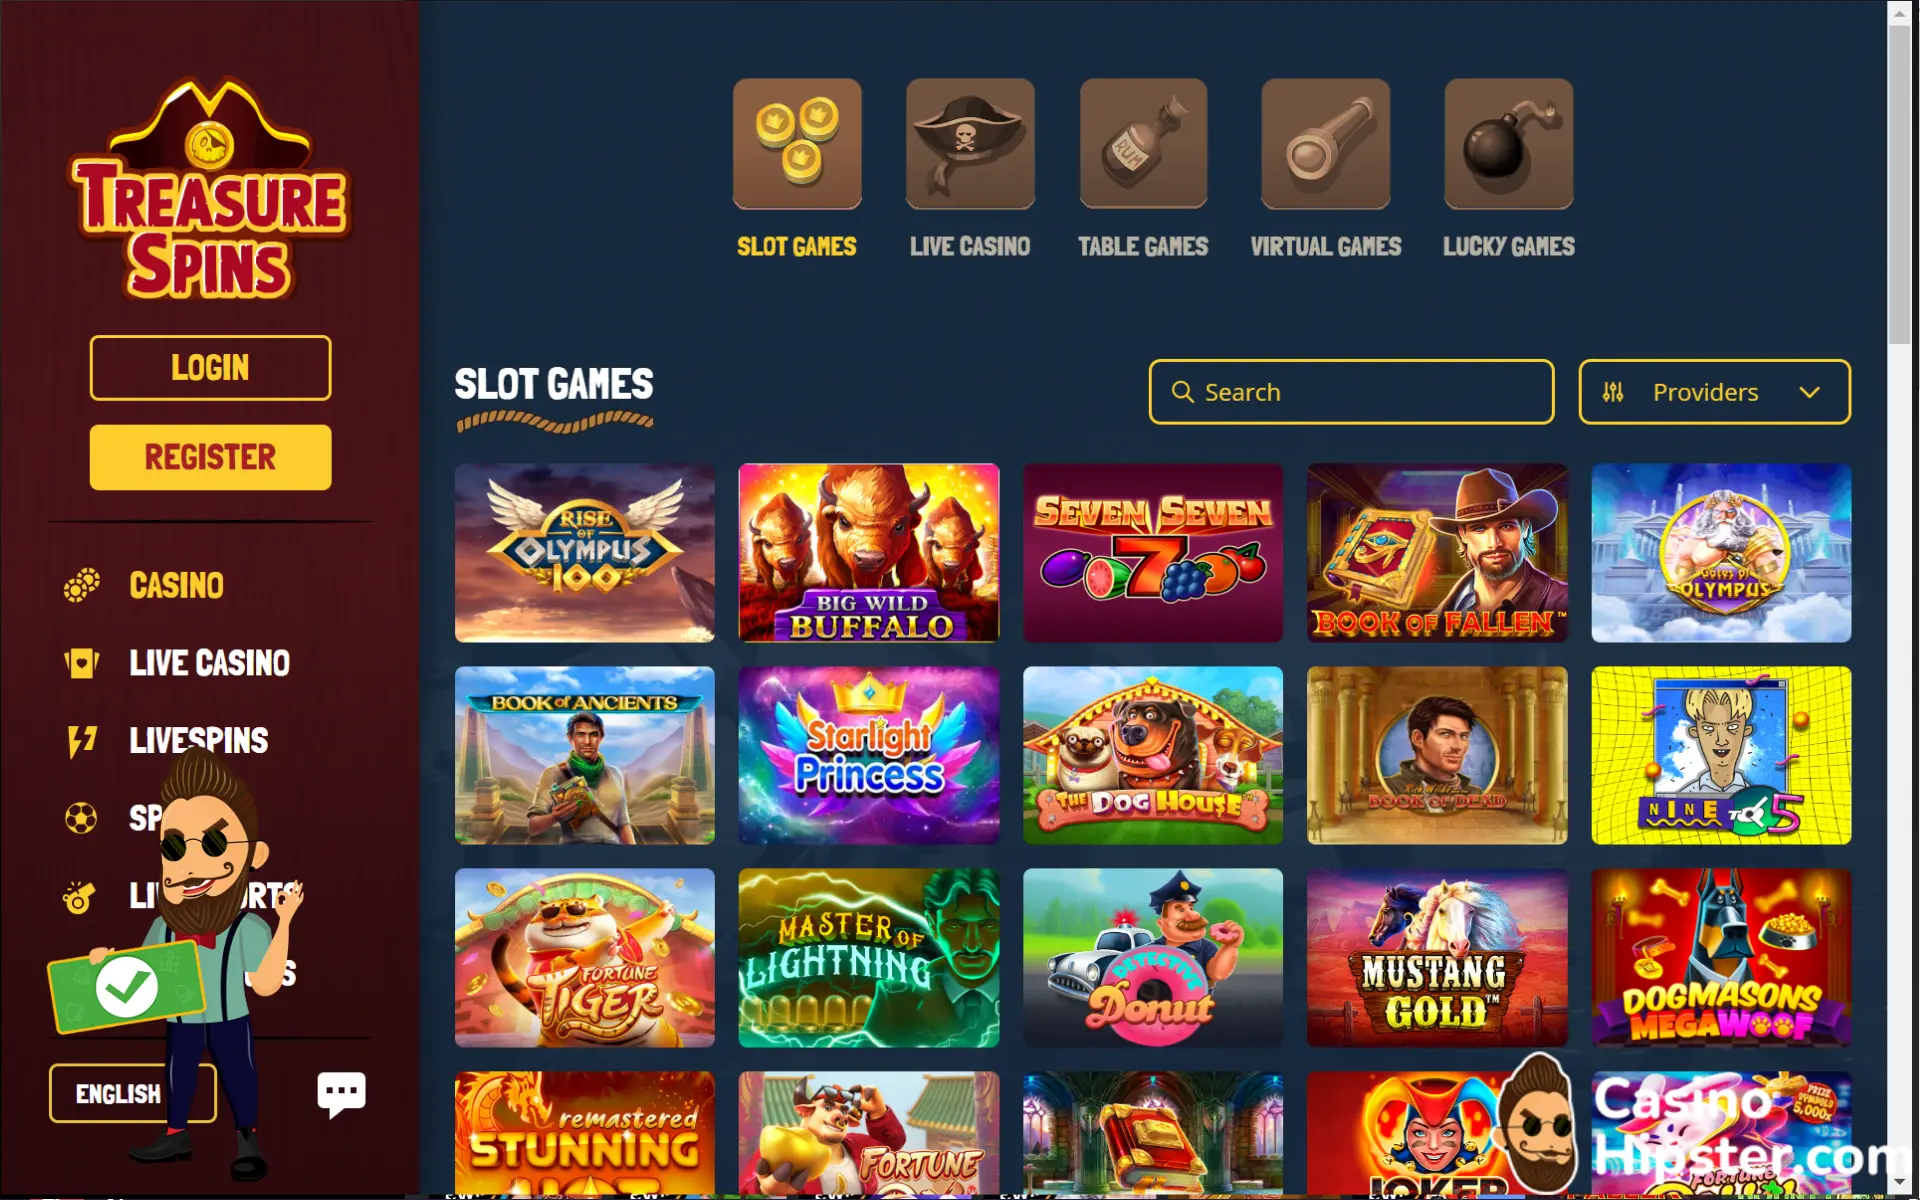 TreasureSpins Casino Games